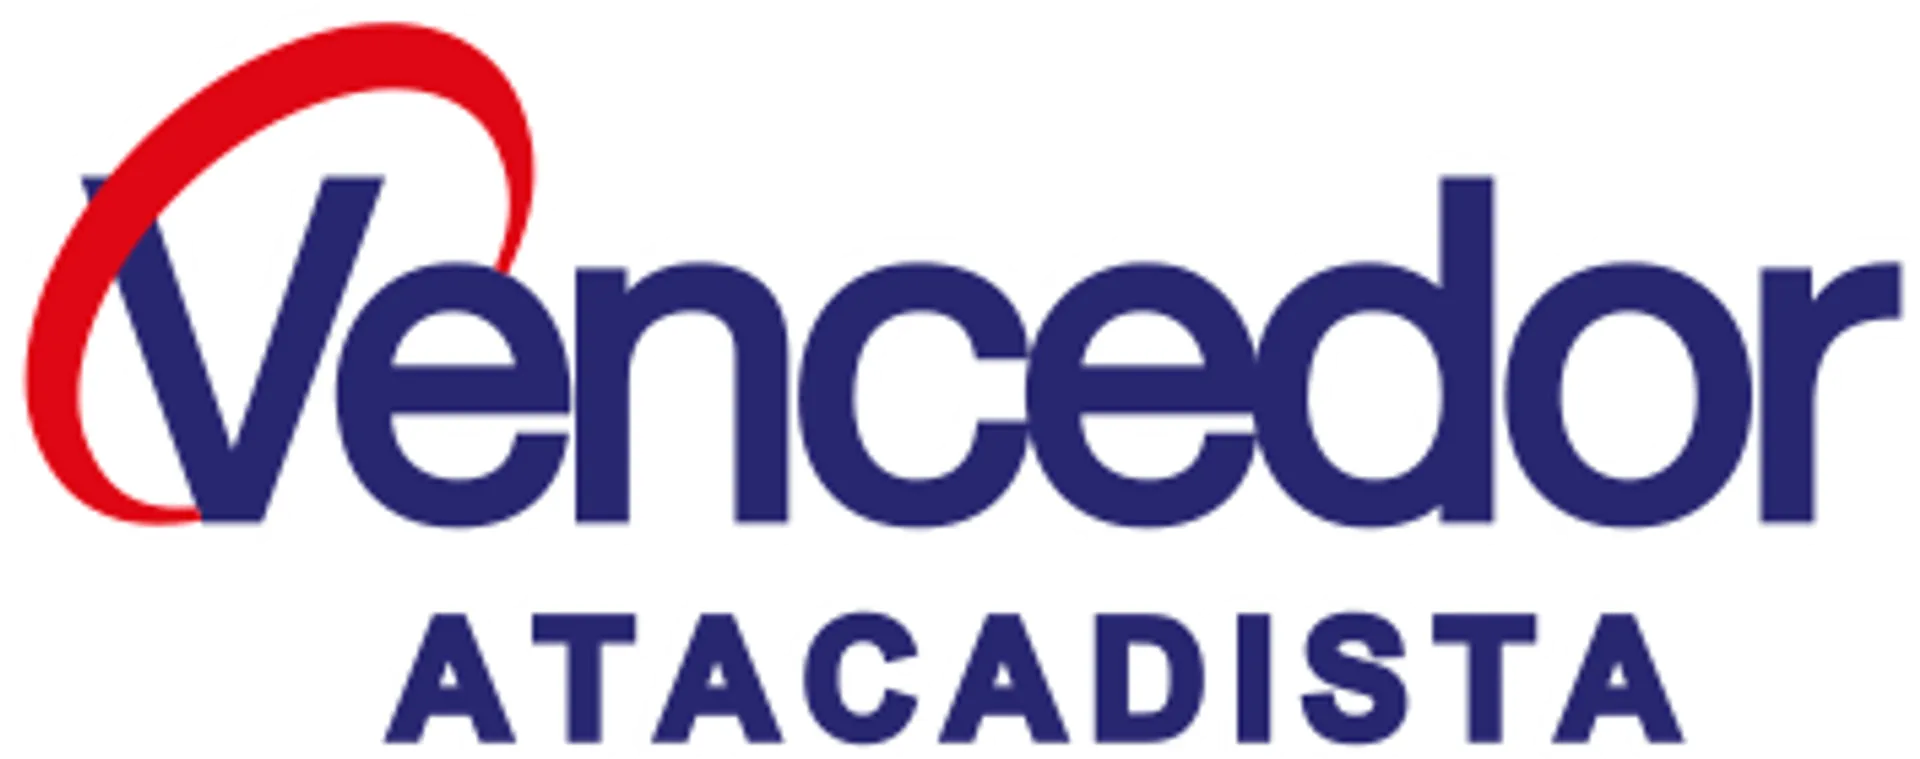 VENCEDOR ATACADISTA logo